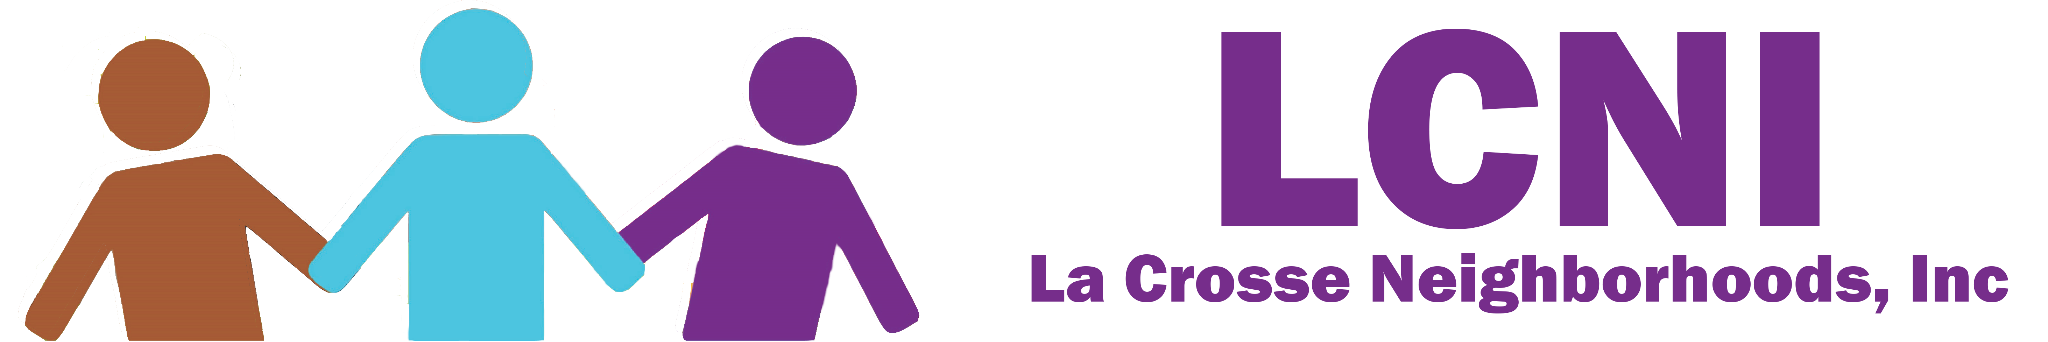 La Crosse neighborhoods Inc logo